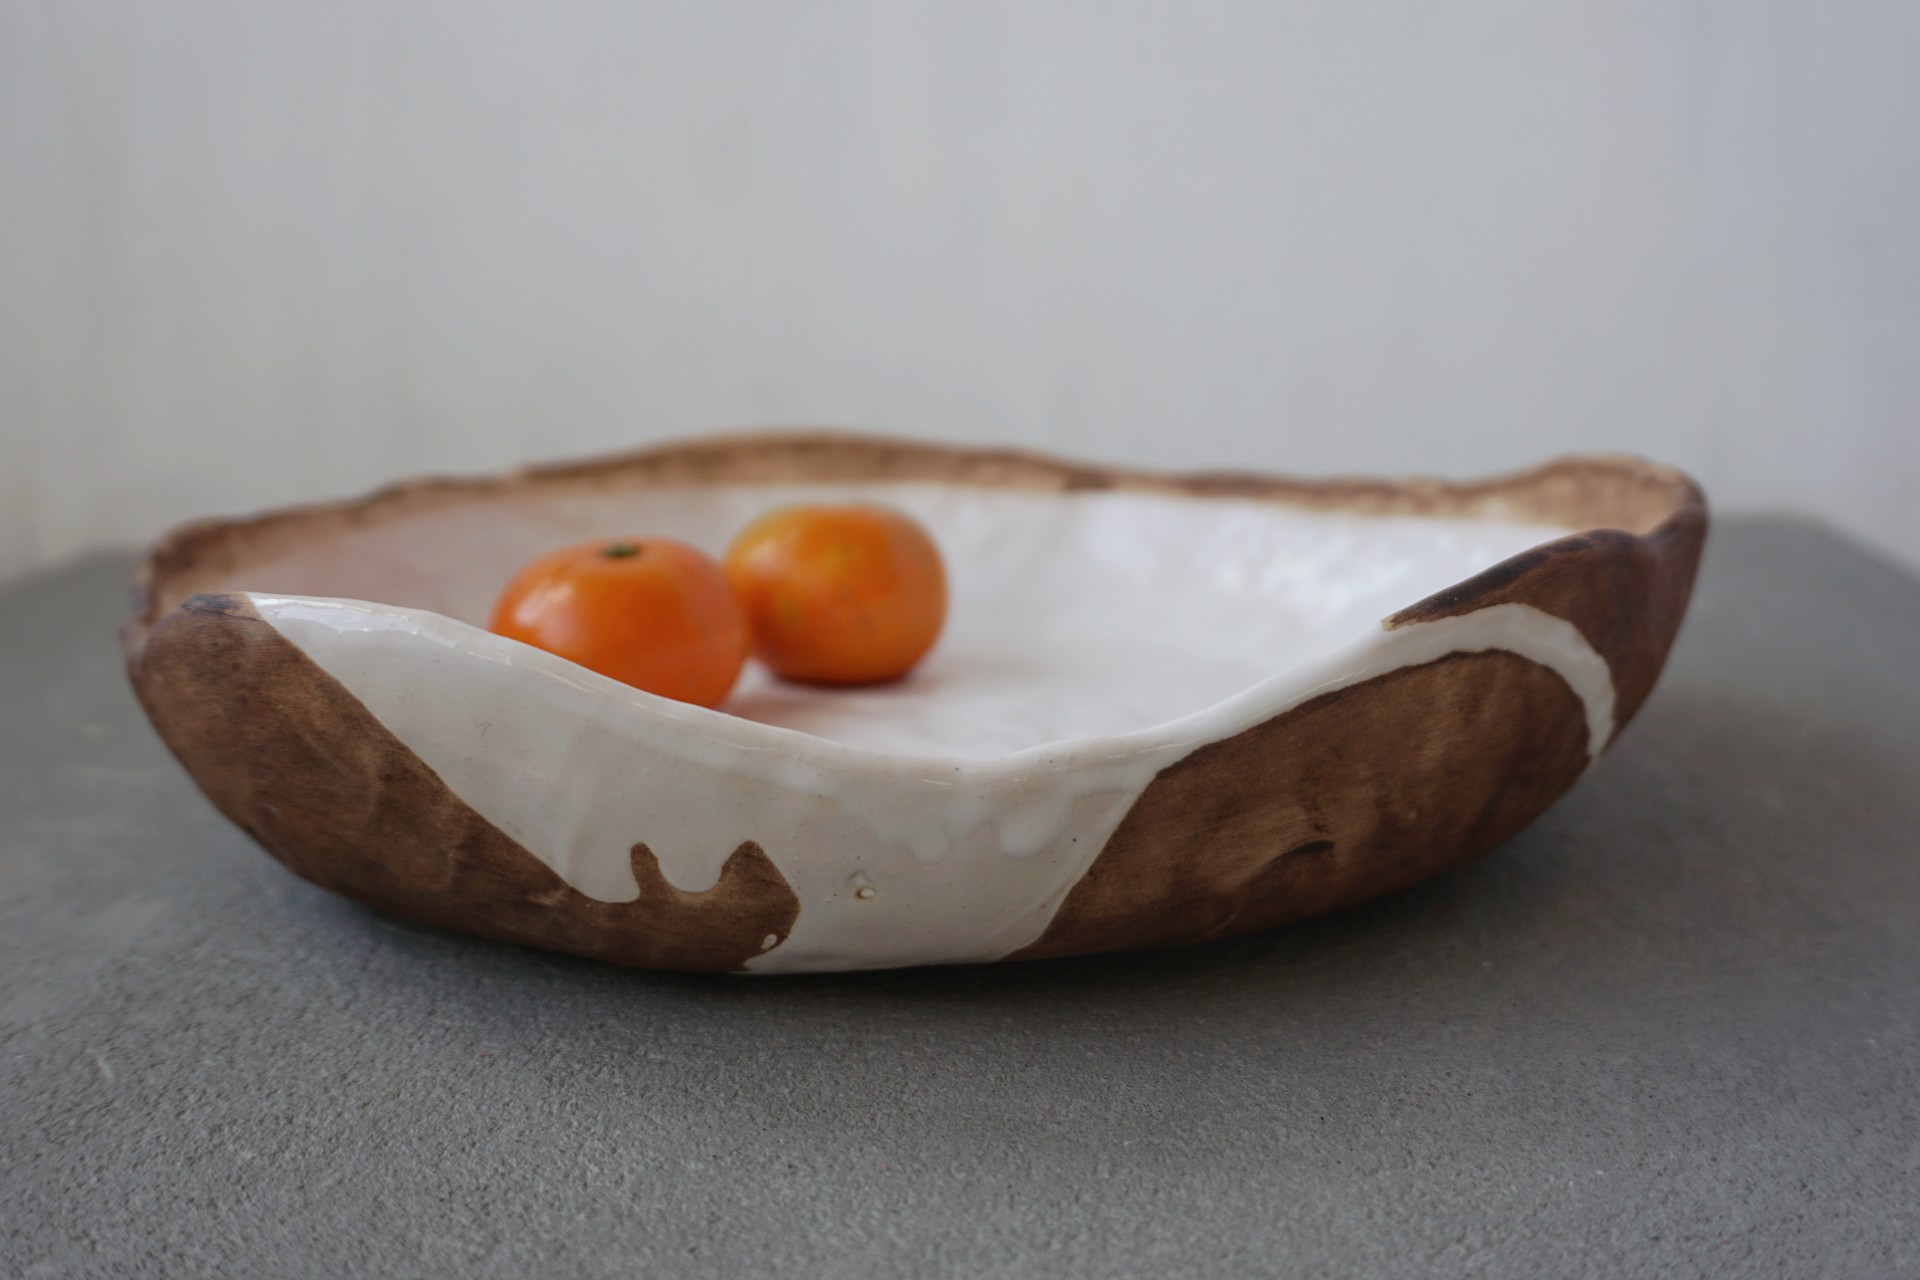 White Bowl by Kate Voronina